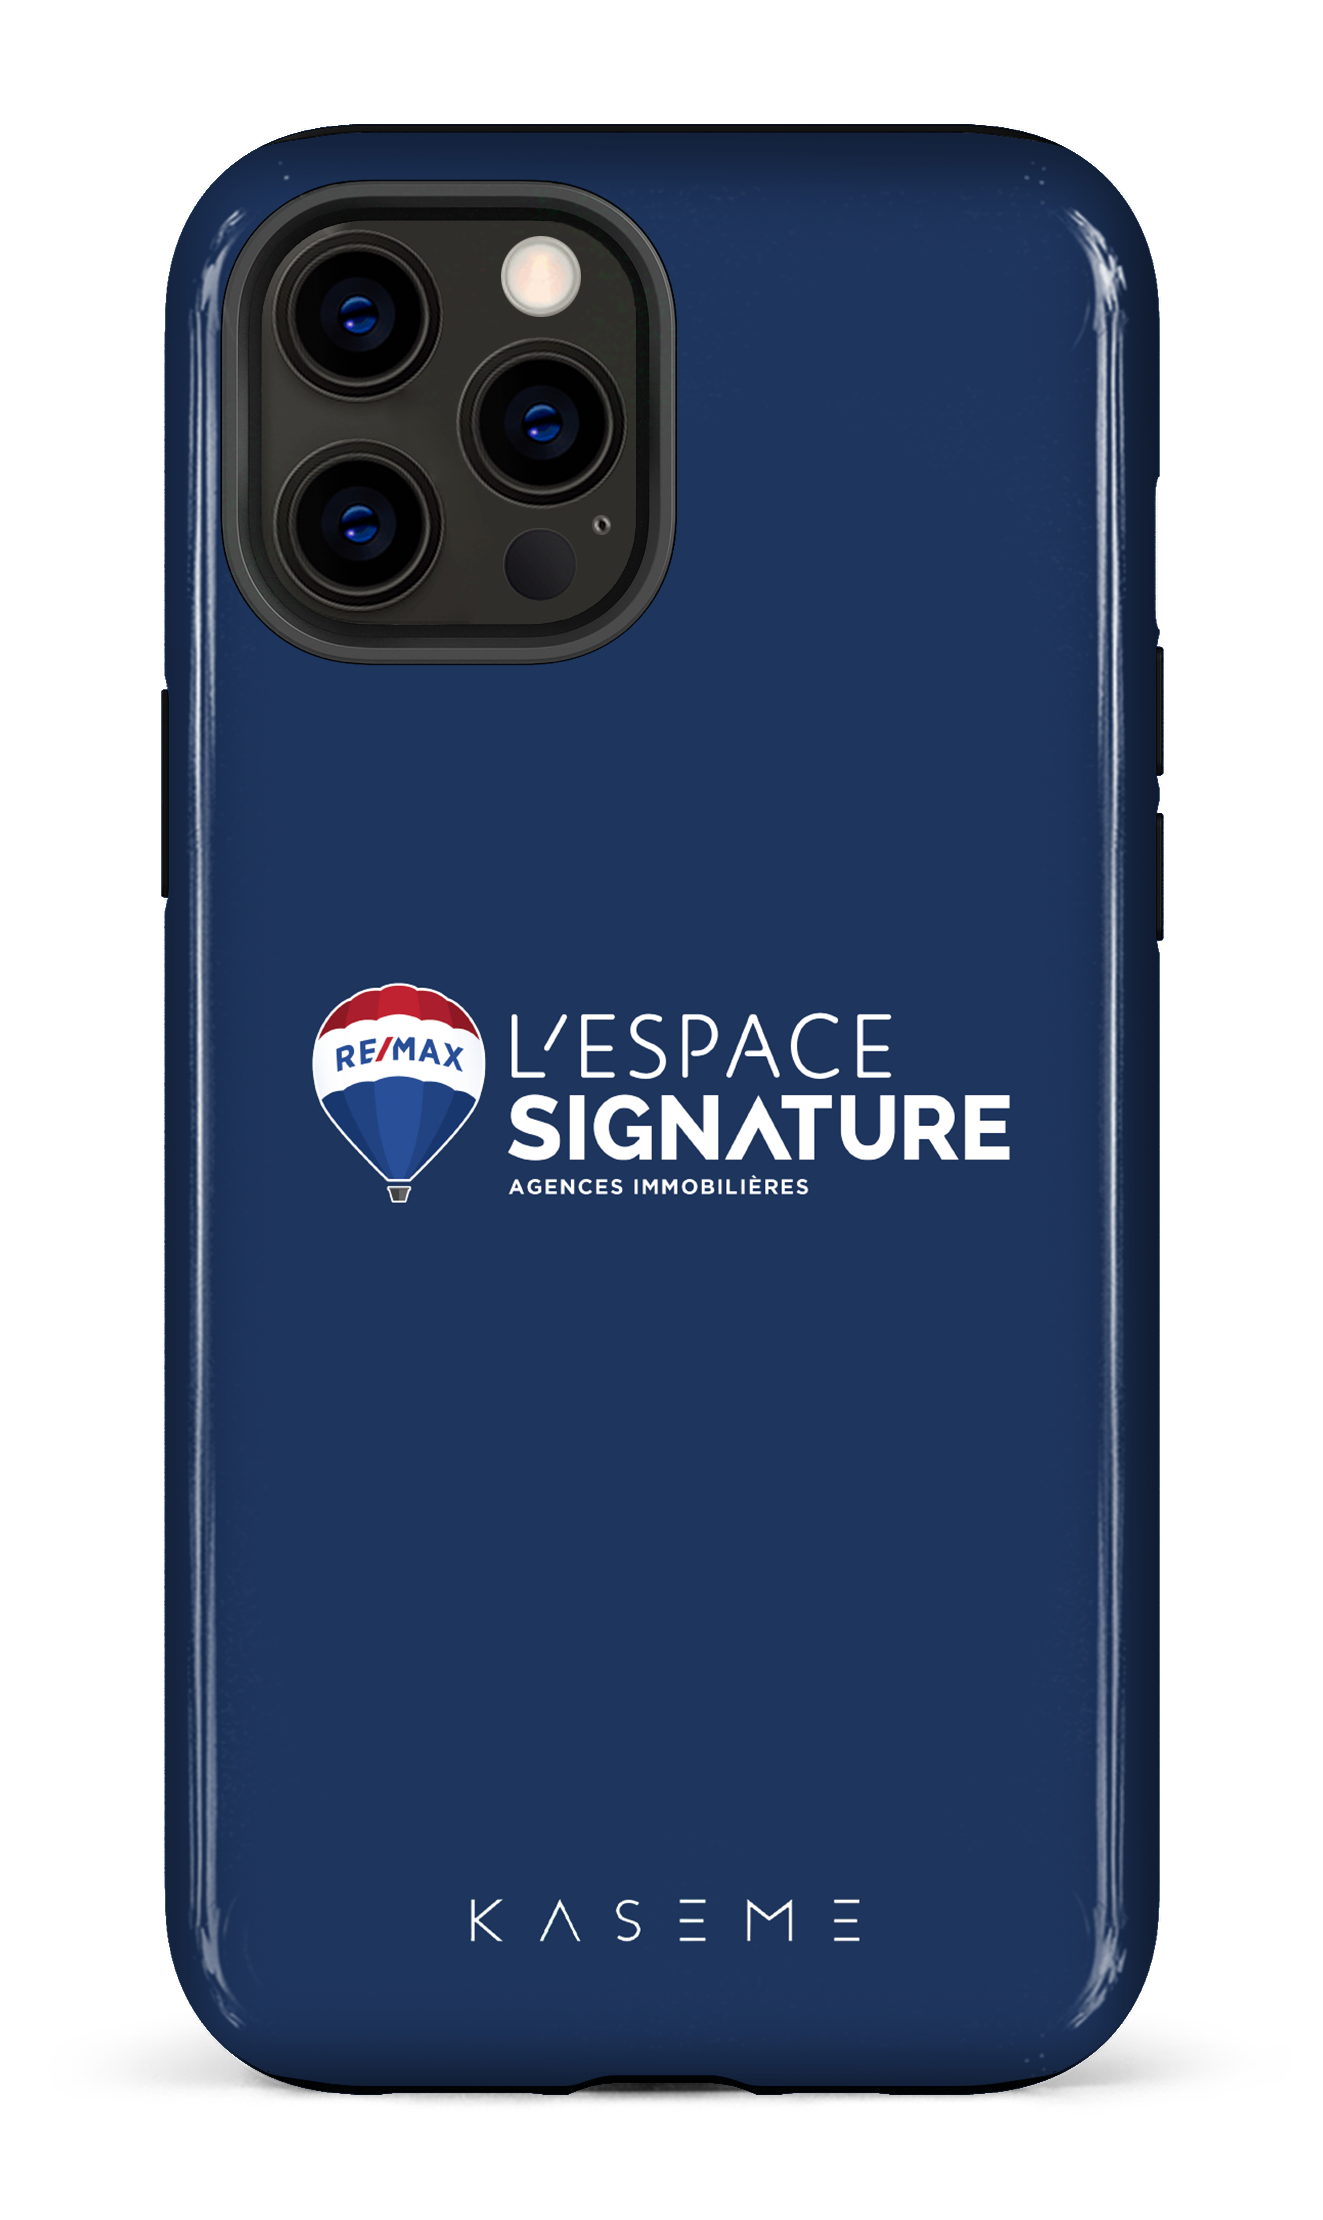 Remax Signature L'espace Bleu - iPhone 12 Pro Max